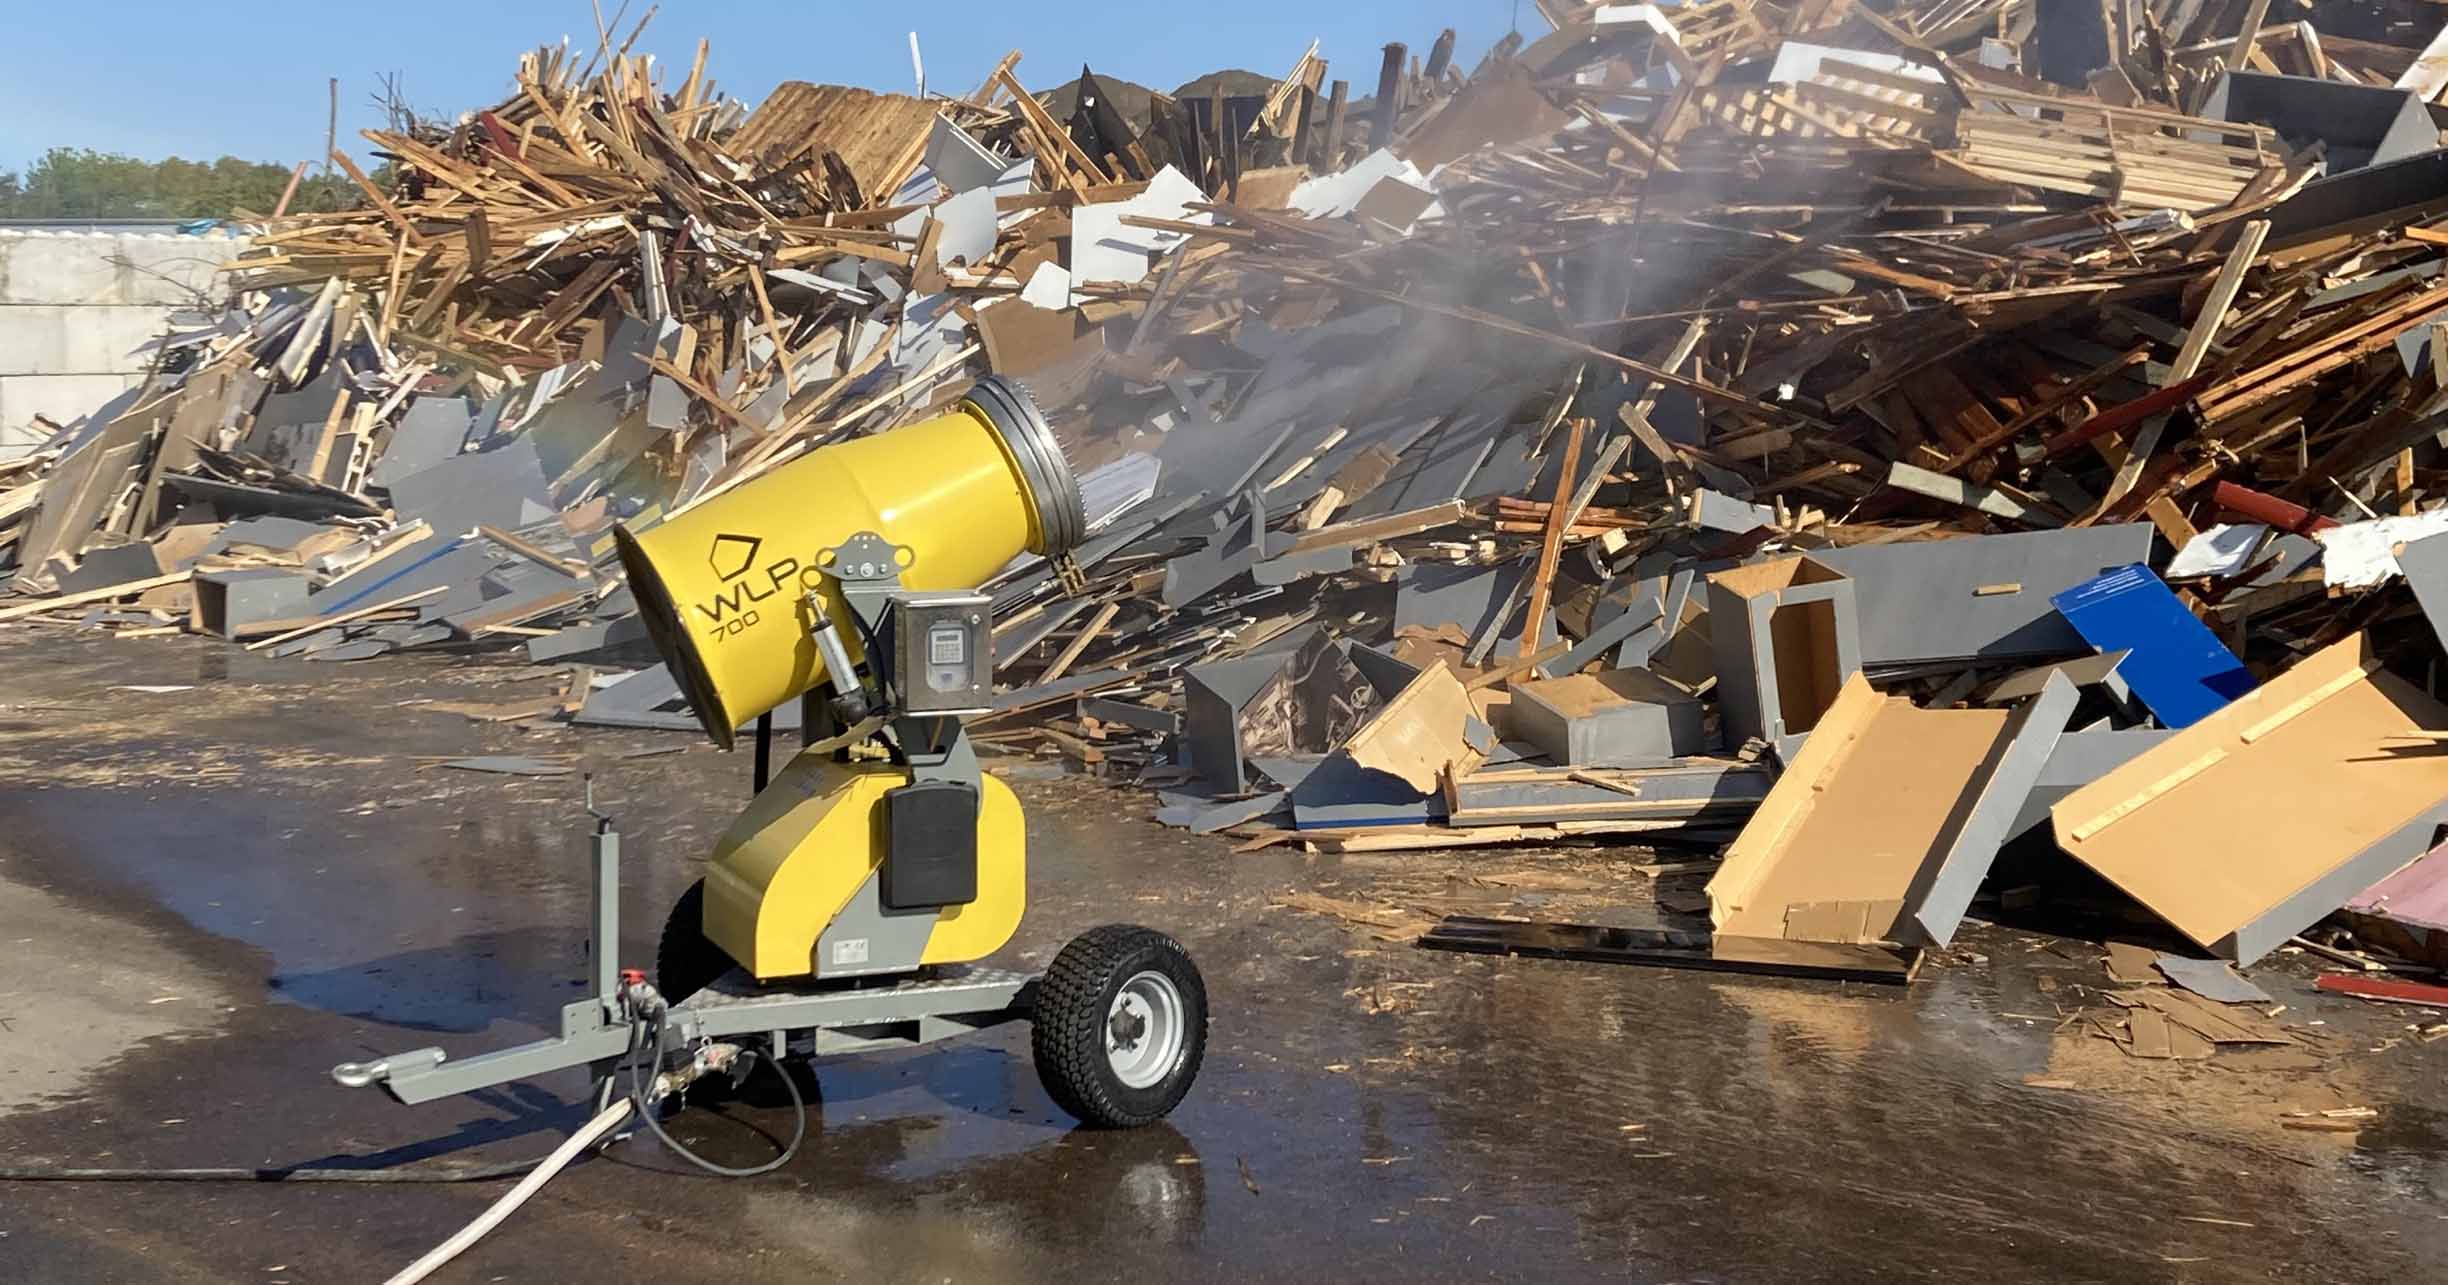 WLP 700 dust suppression system on wood debris yard